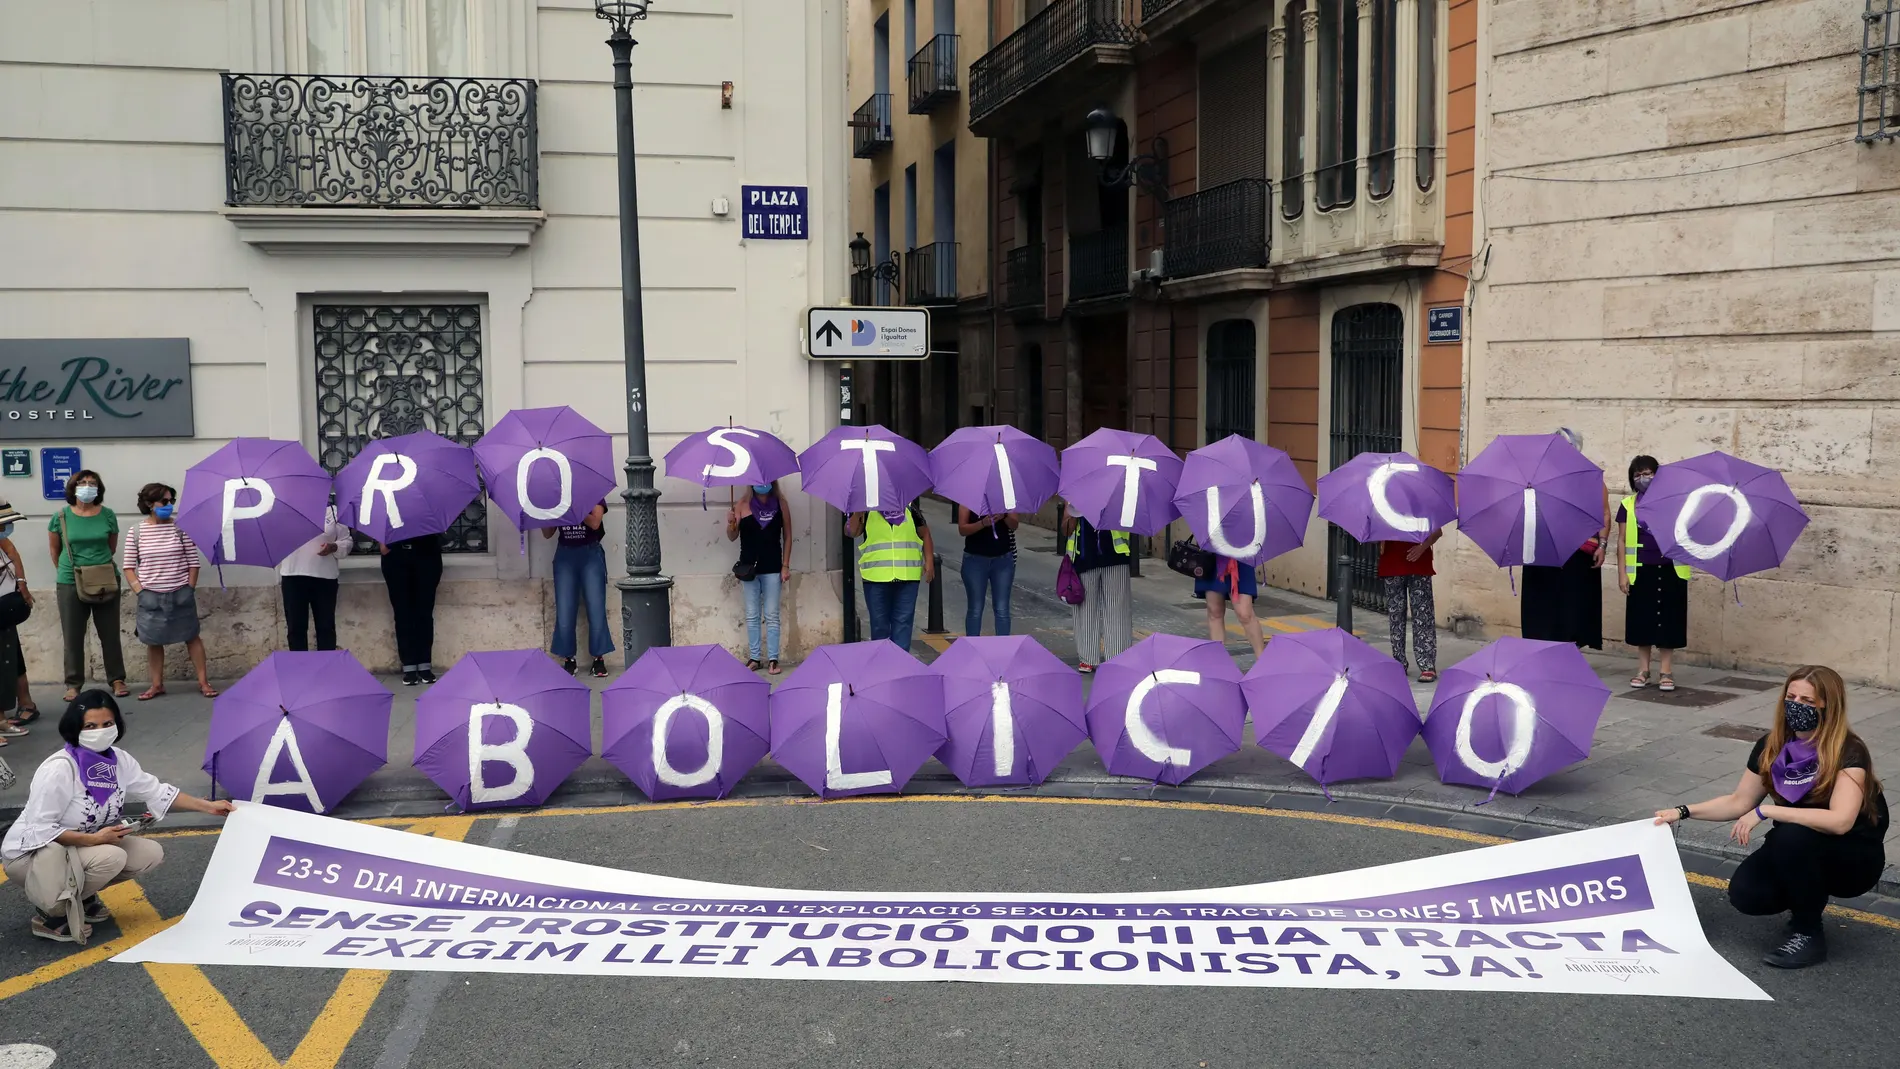 El Front Abolicionista durante una concentración en Valencia para exigir una ley que acabe "con el sistema prostitucional"